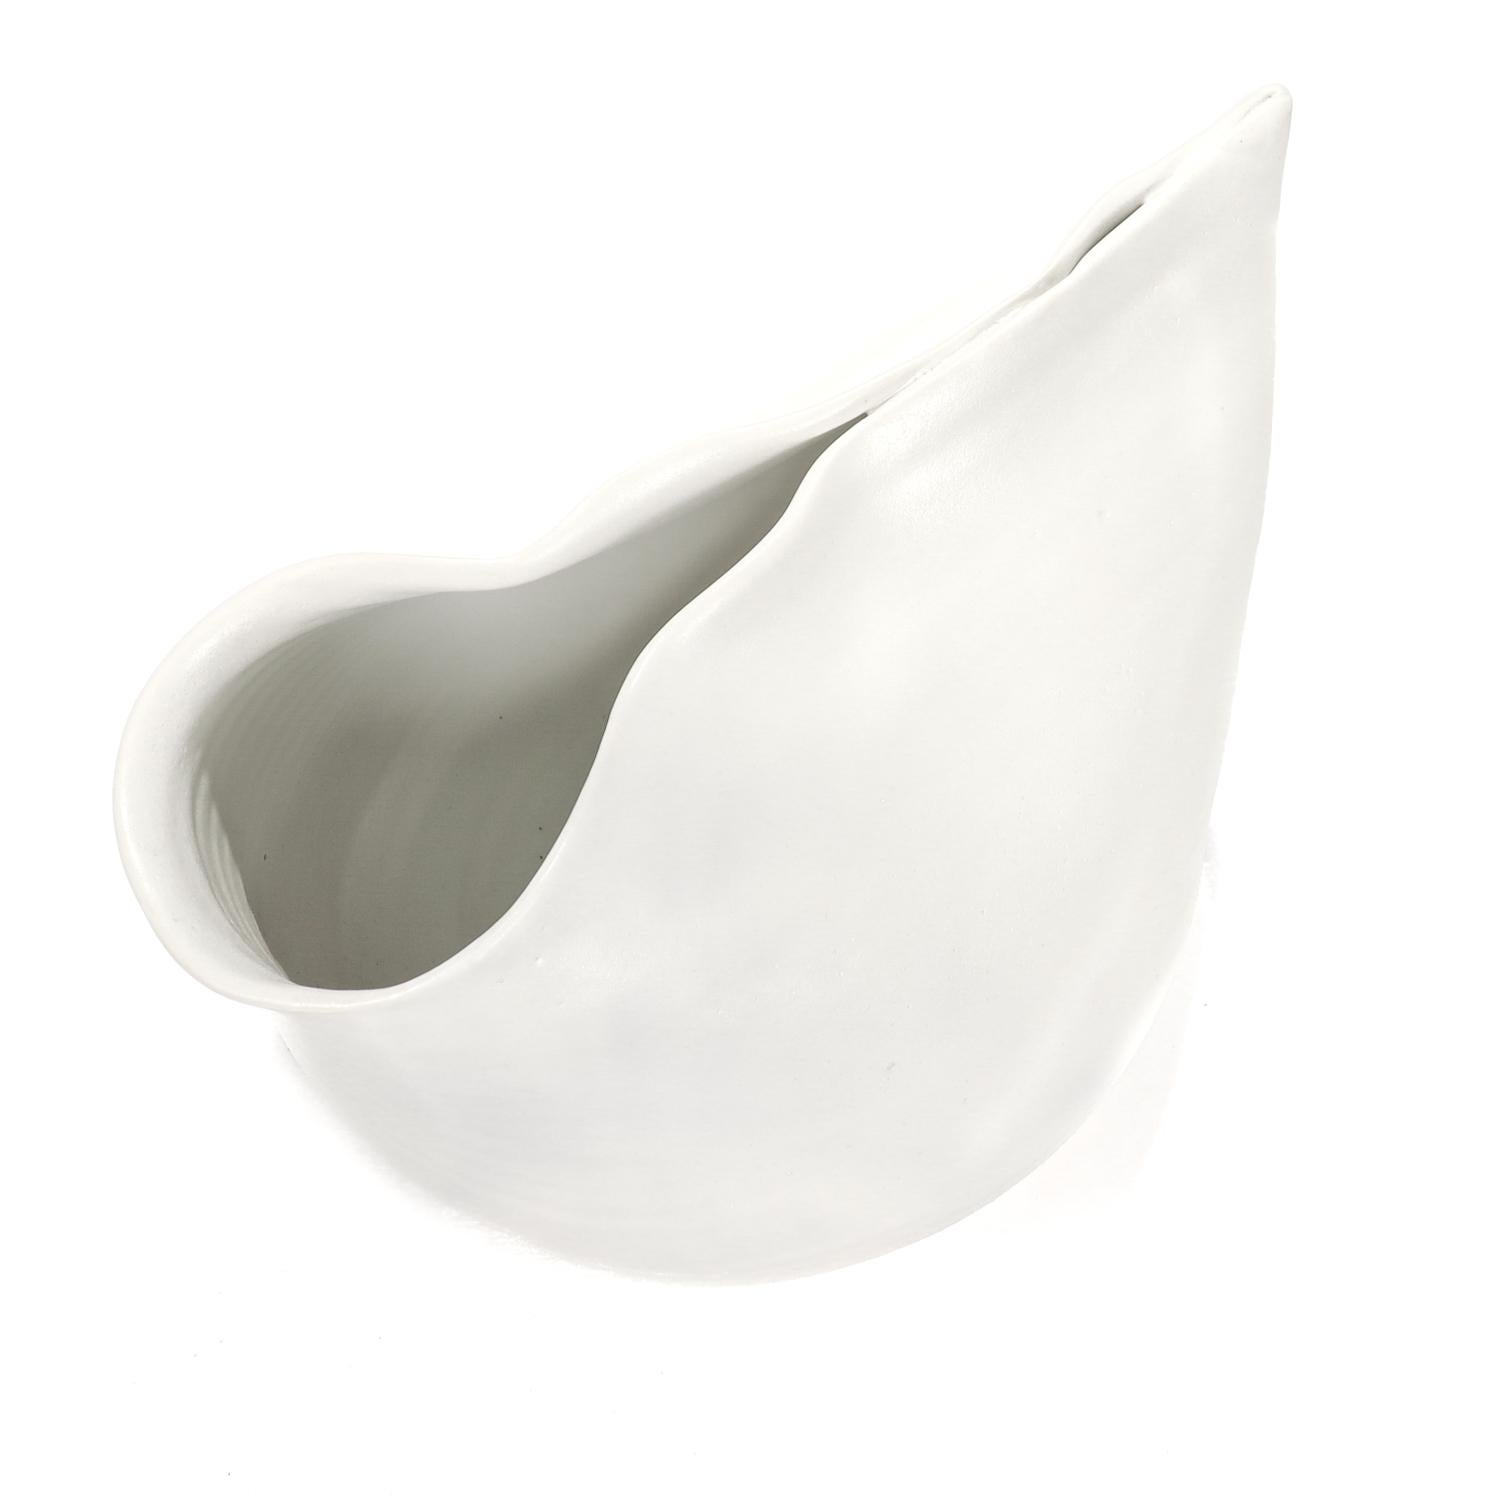 Donna Karan Lenox Signed Limited Edition Embrace Porcelain Vase / Vessel For Sale 1